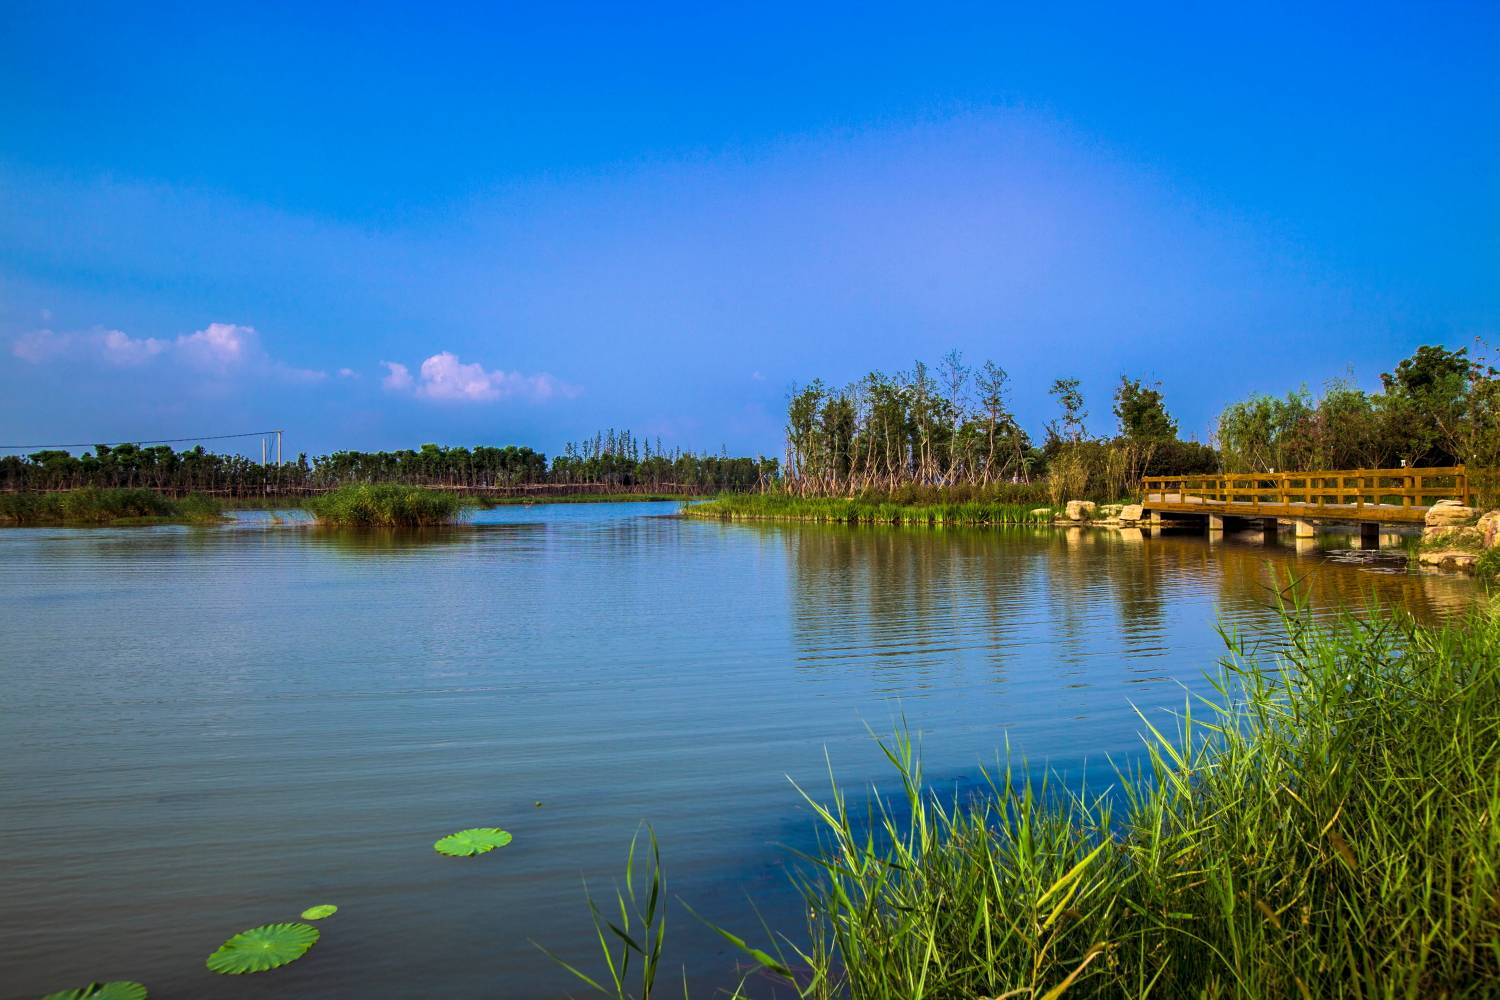 原创江苏的人工湖,是国家级水利风景区,被打造成国家生态旅游示范区